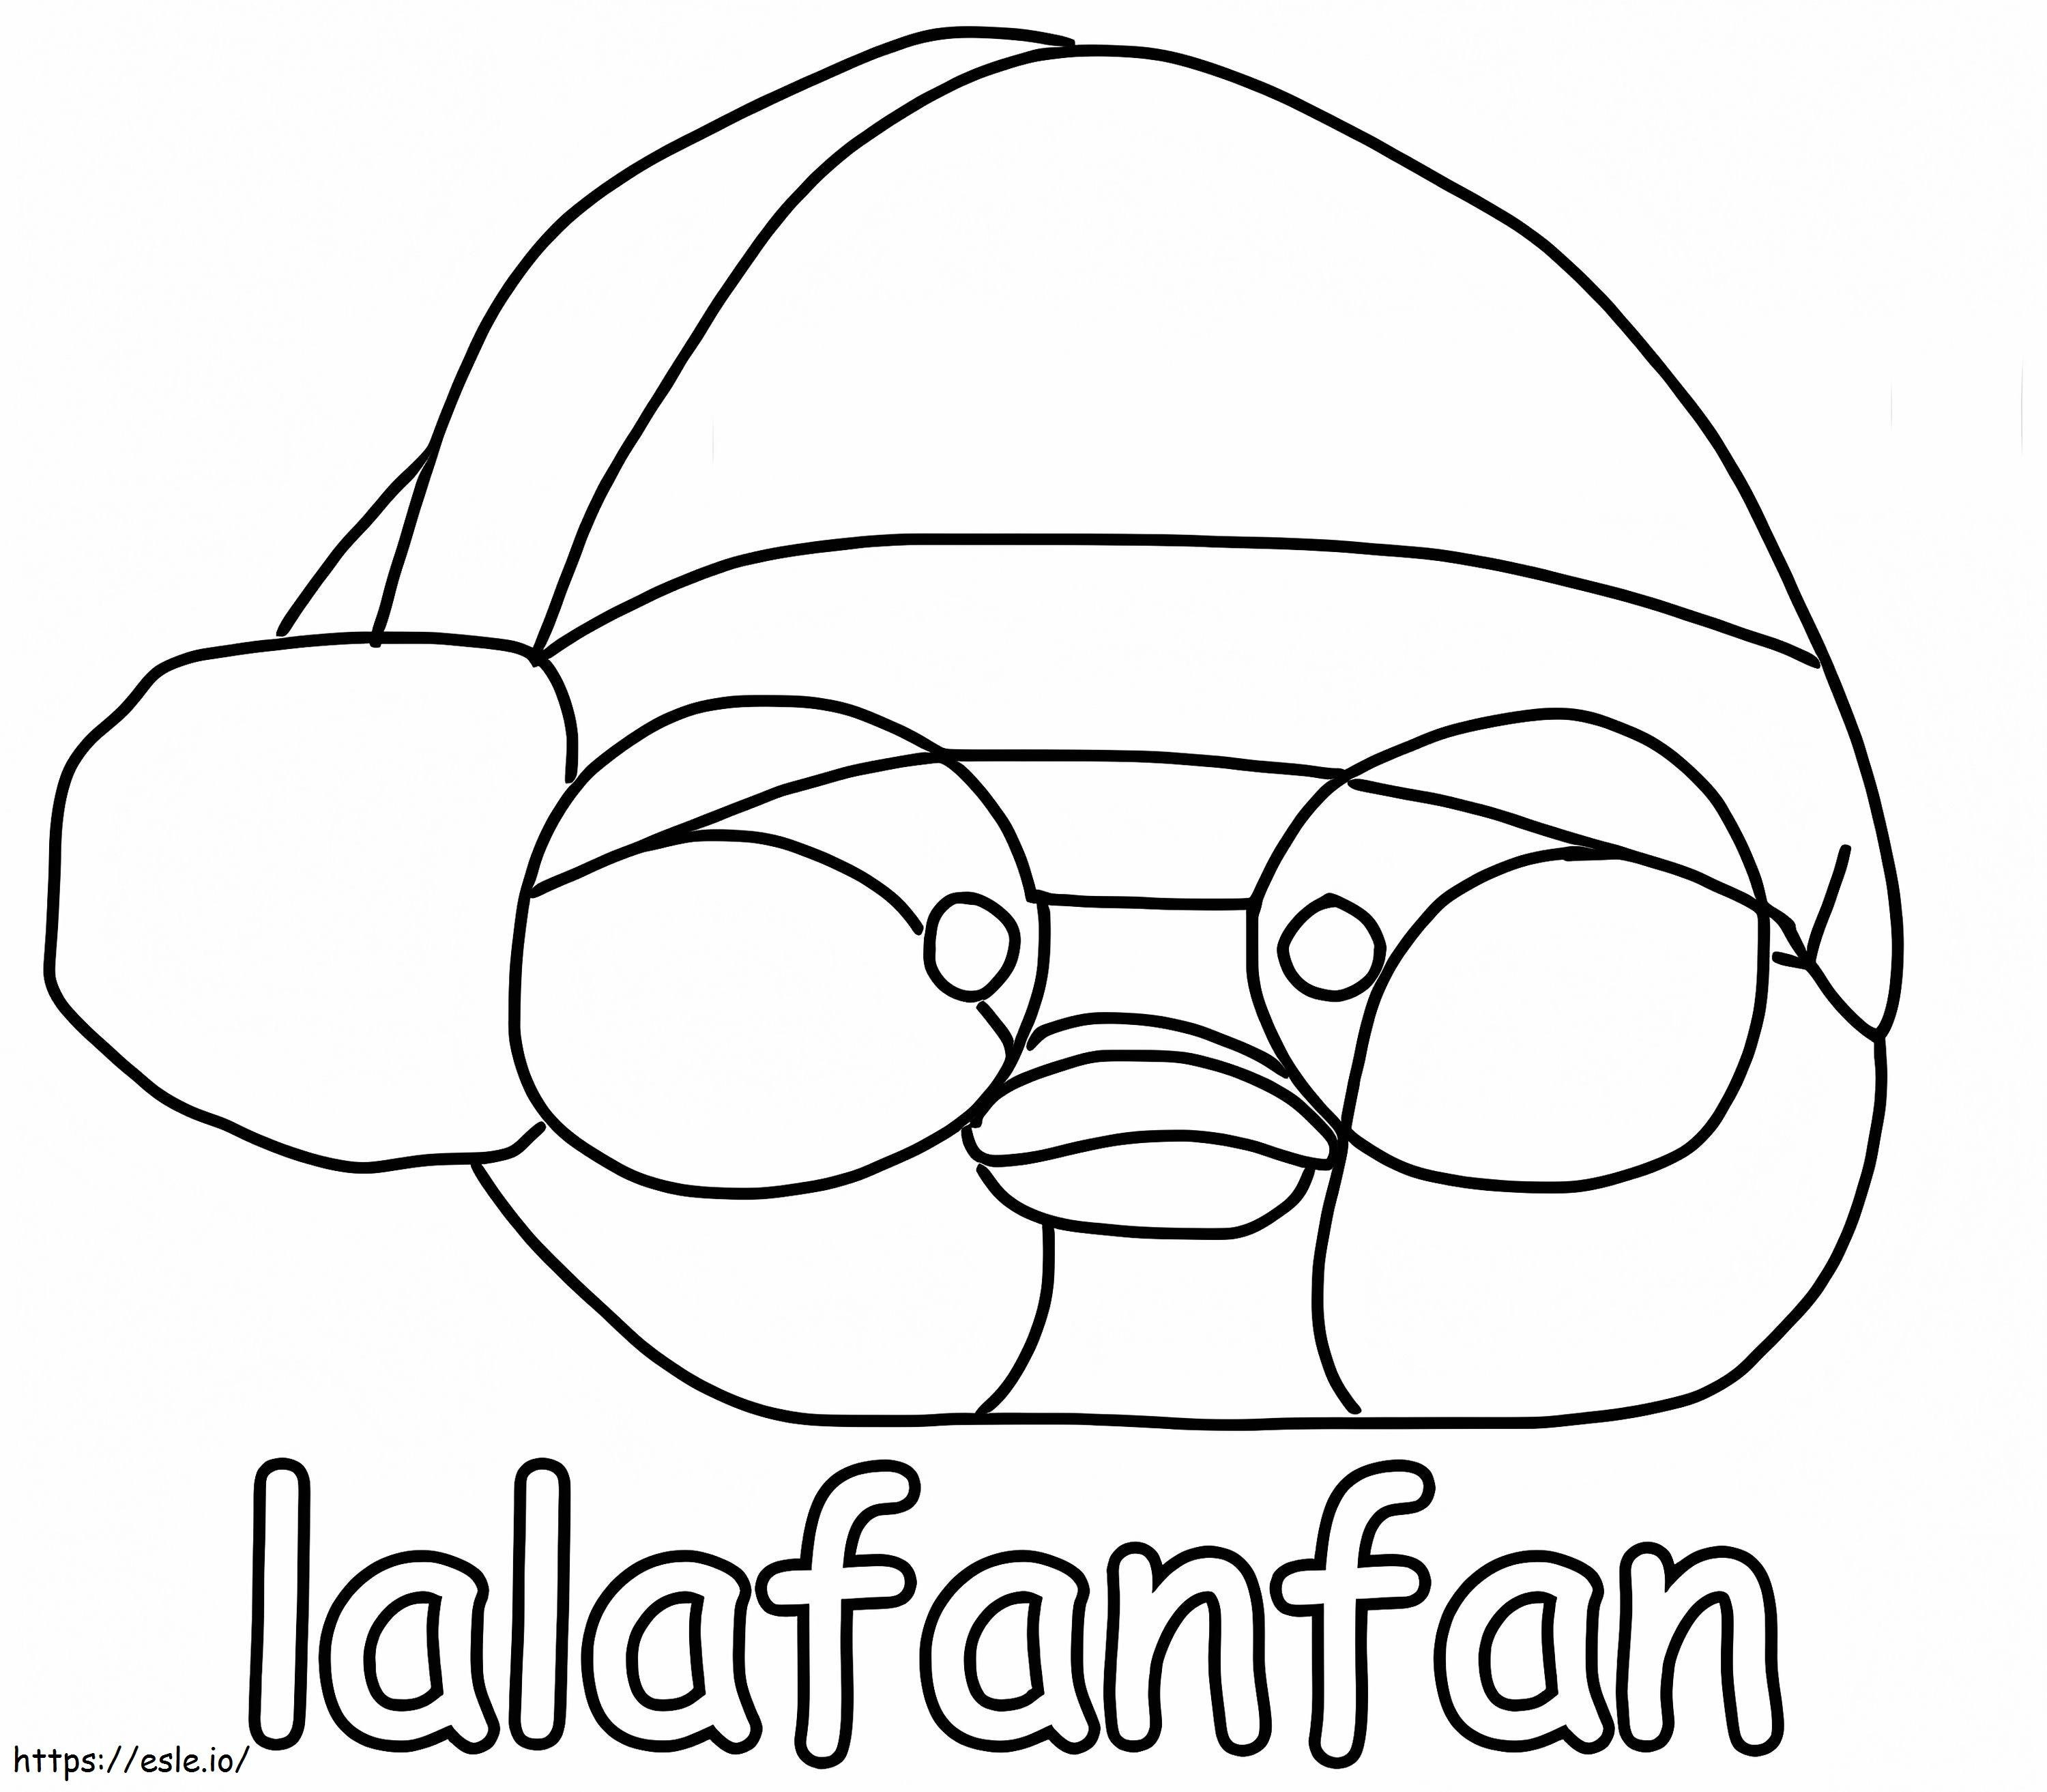 Coloriage Lalafanfan gratuit à imprimer dessin